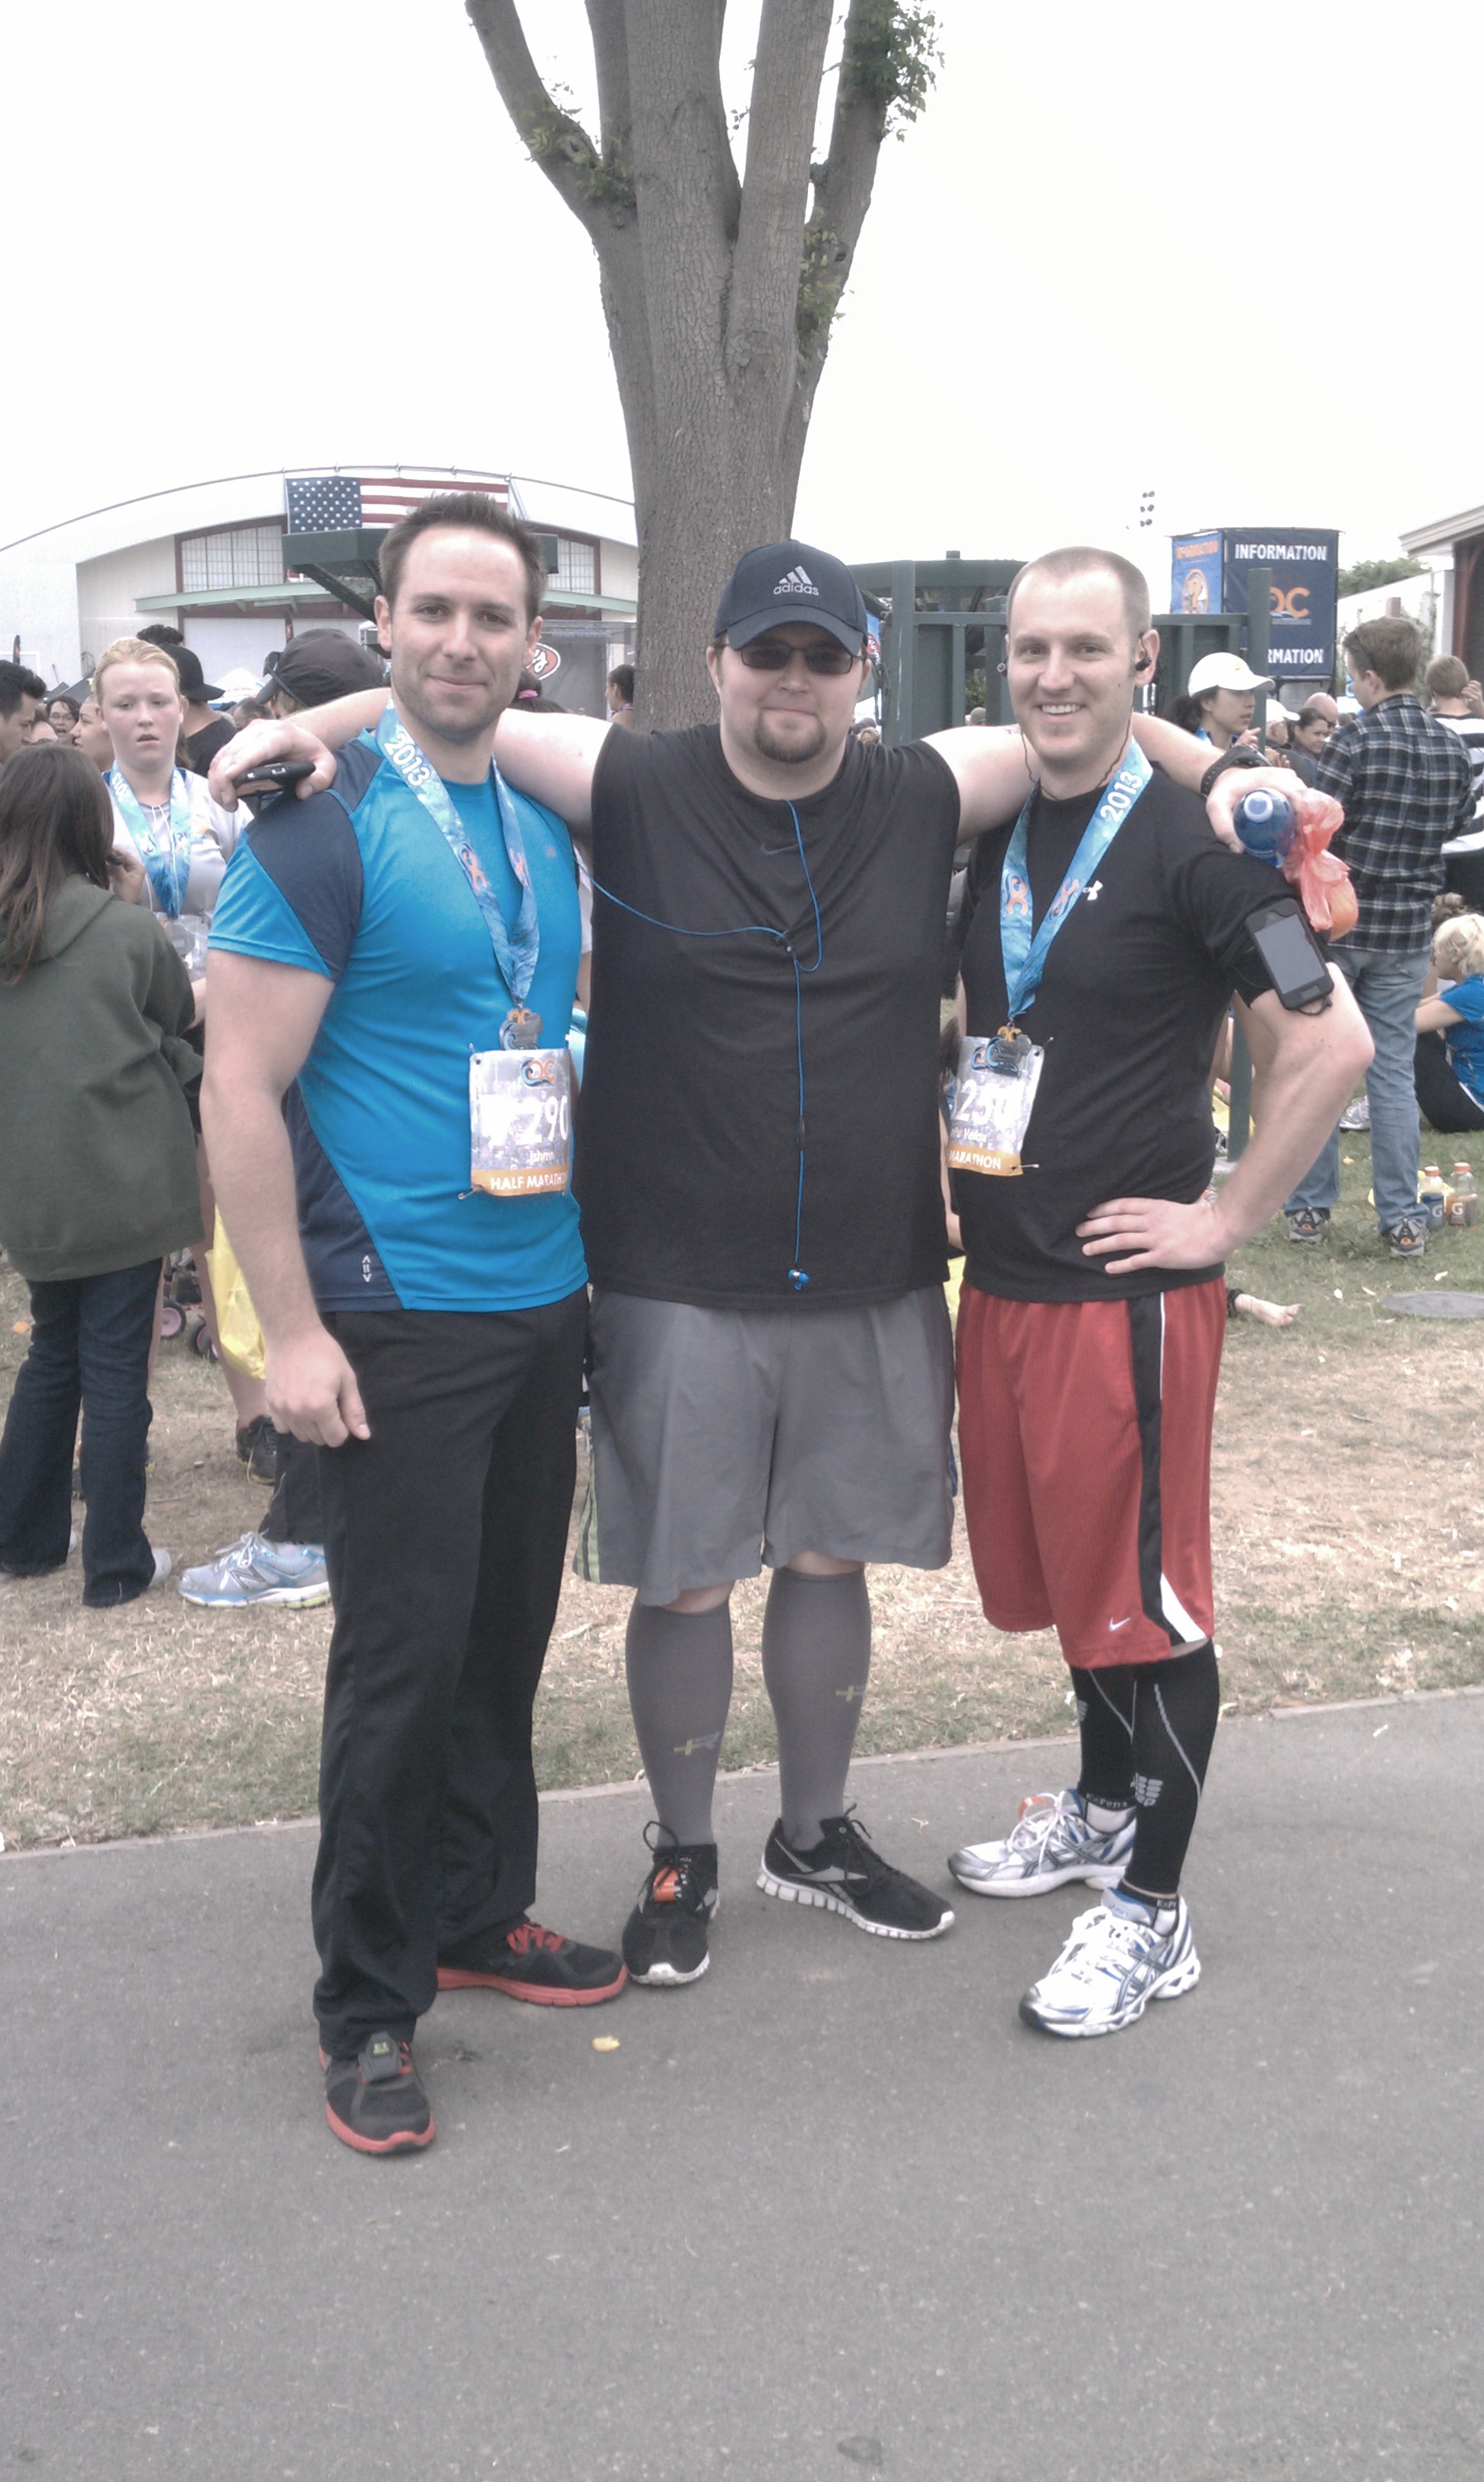 Arms around friends after running the Orange County half marathon event